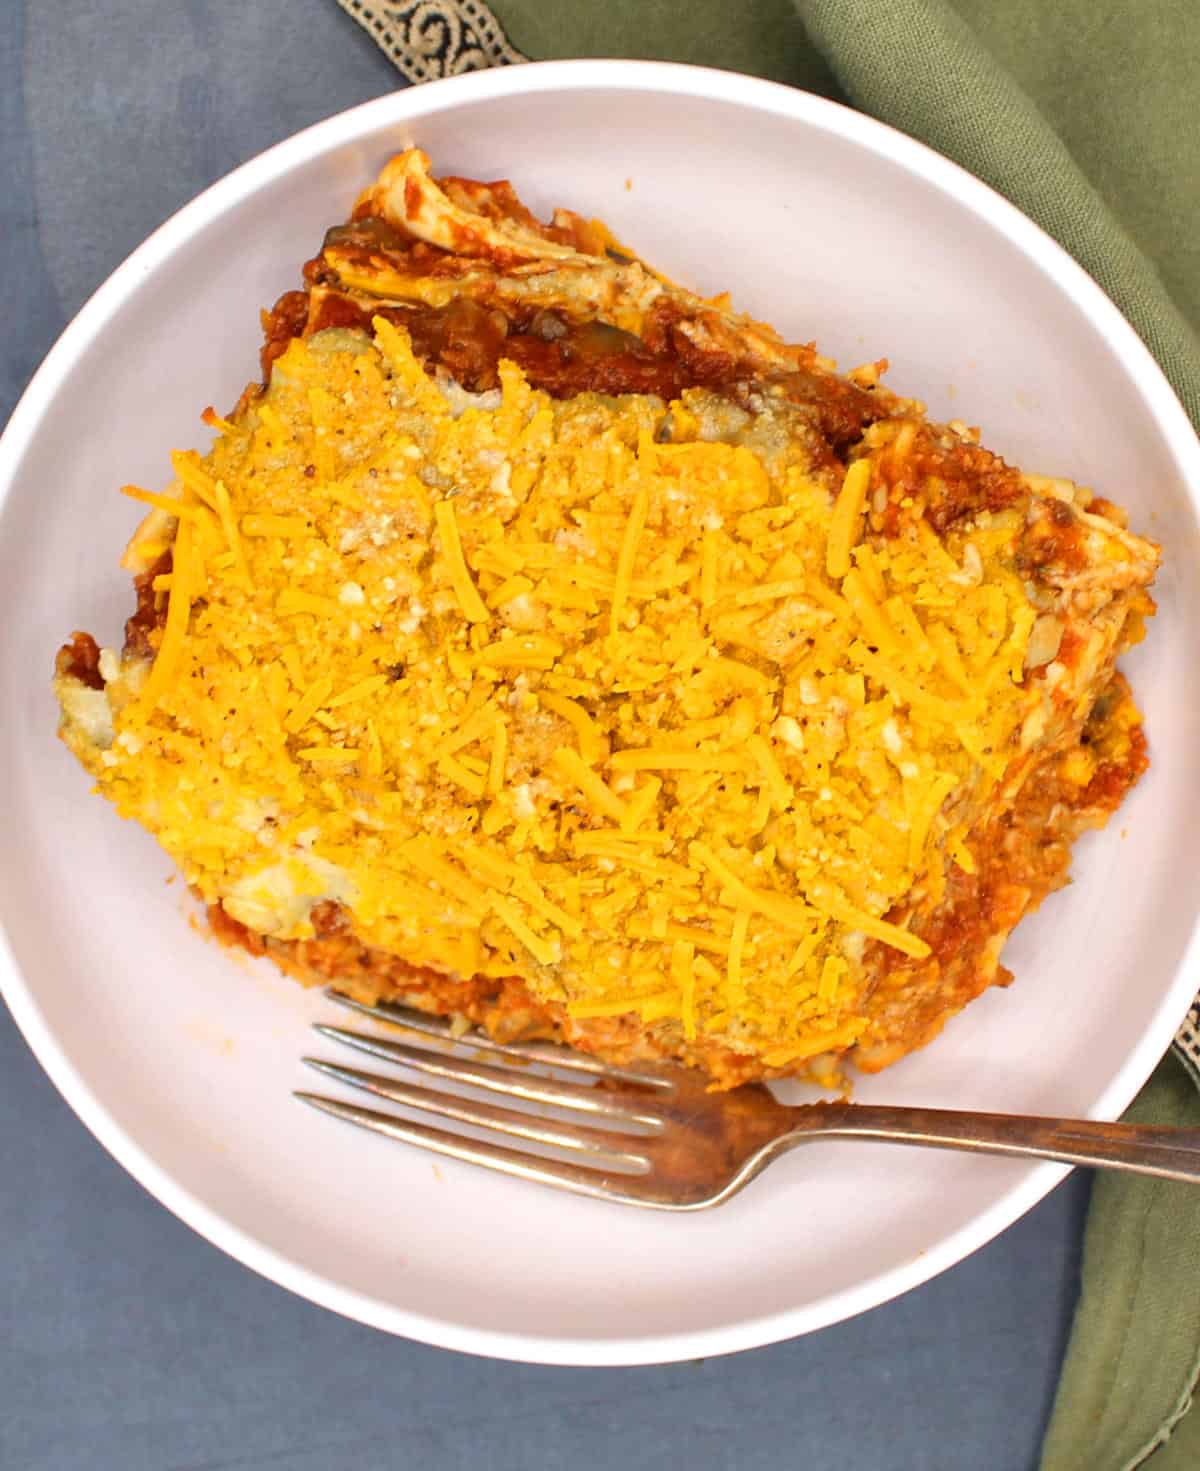 Slice of vegan lasagna in white bowl with fork.